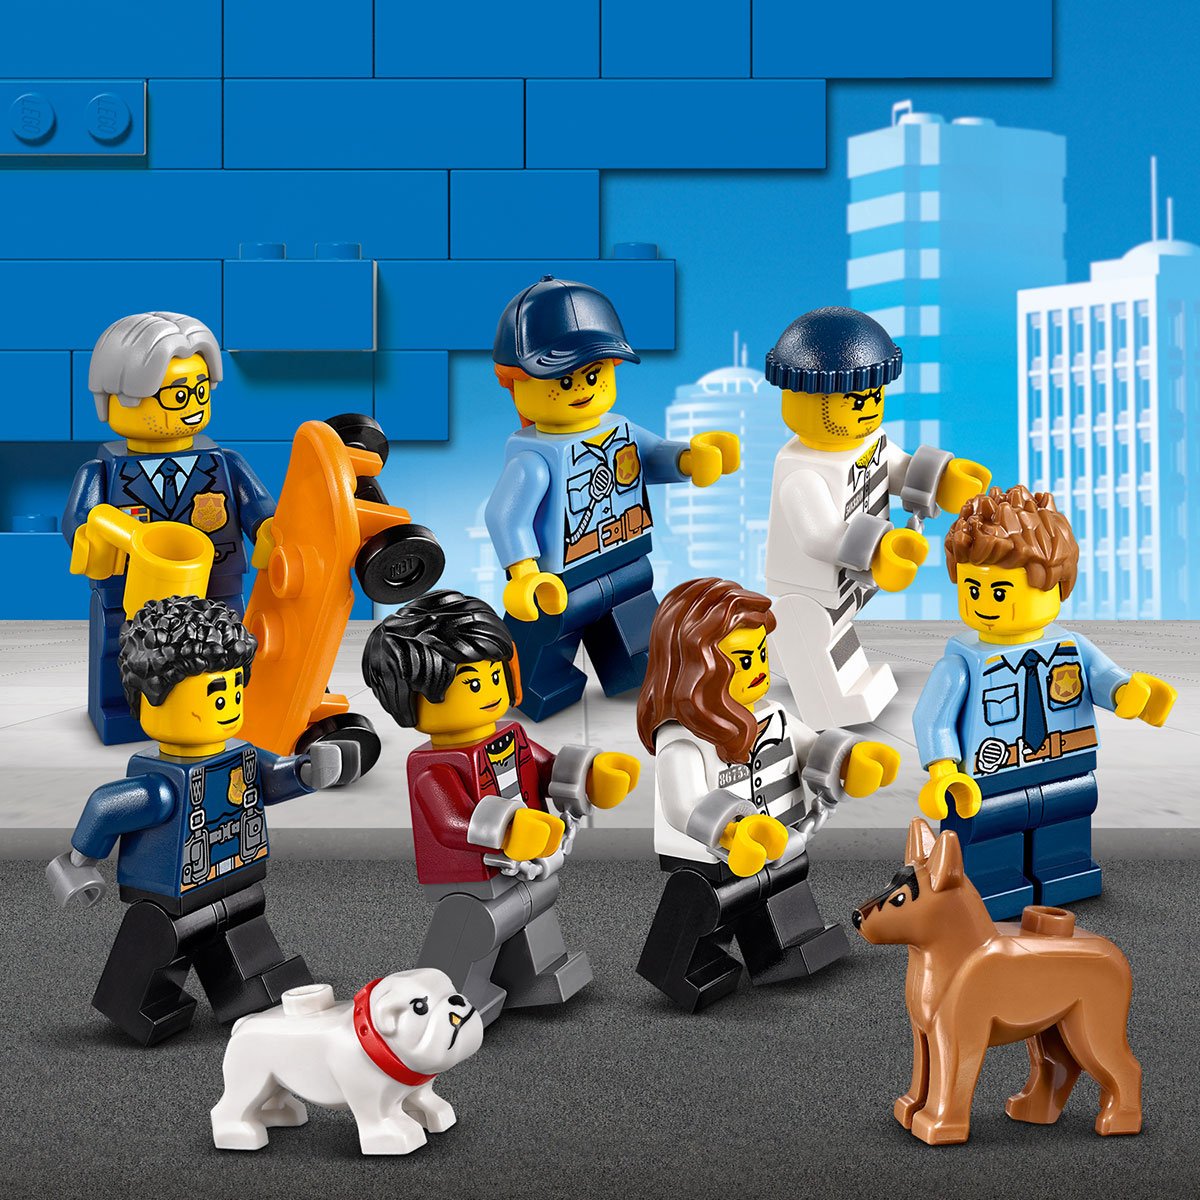 LEGO 60246 City Police Le Commissariat de Police : : Jeux